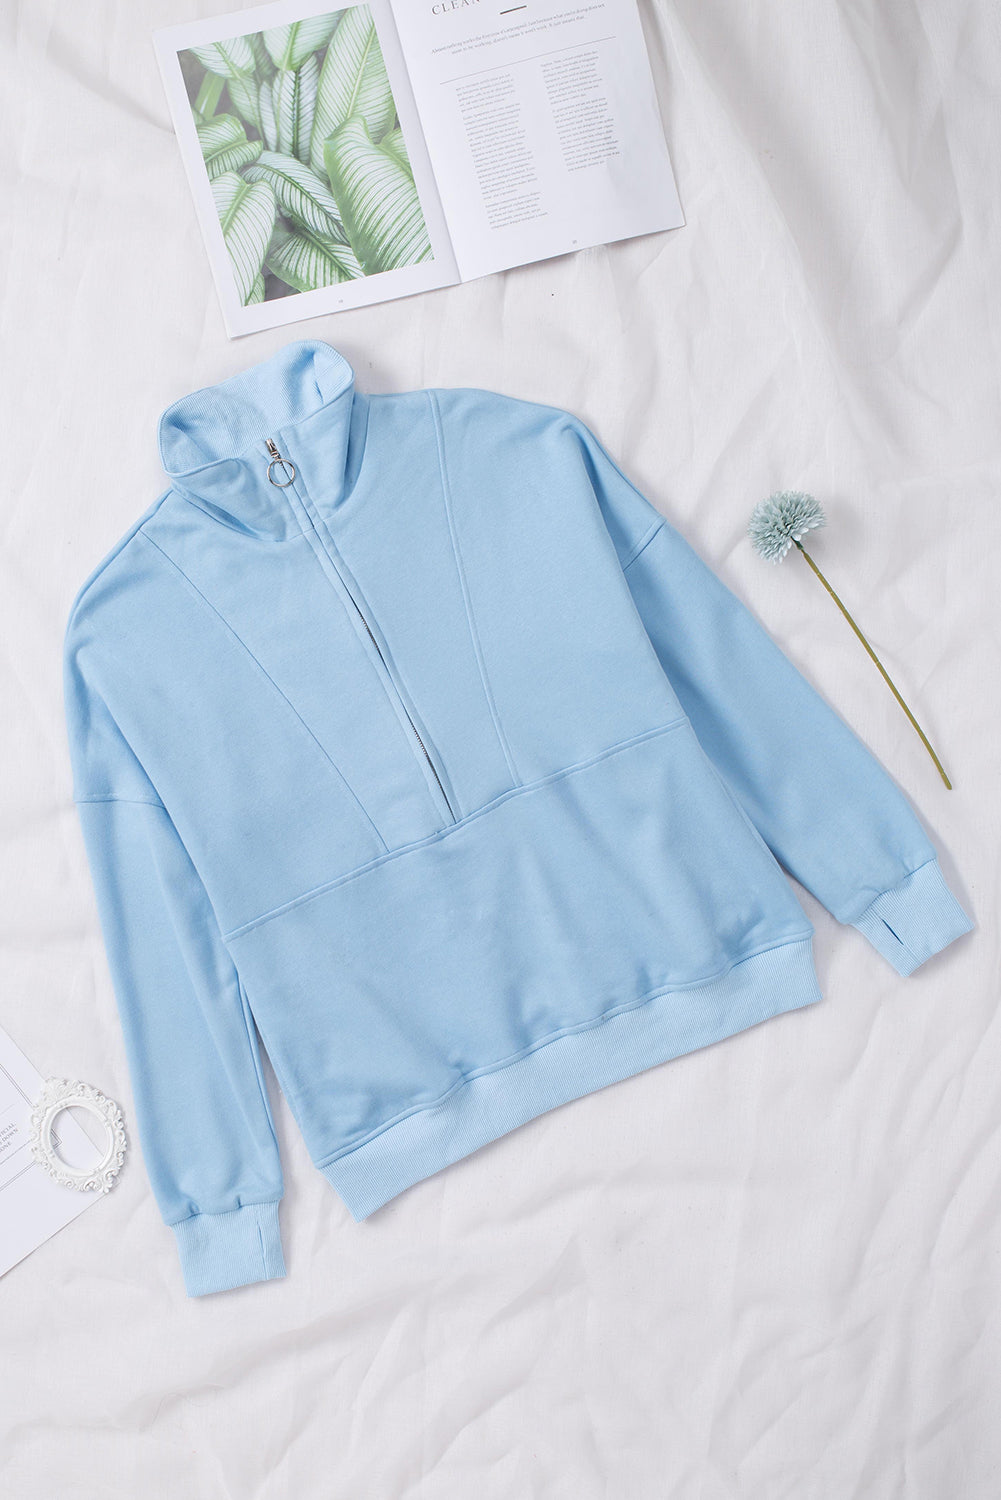 Gray Solid Color Zip Collar Sweatshirt with Pockets